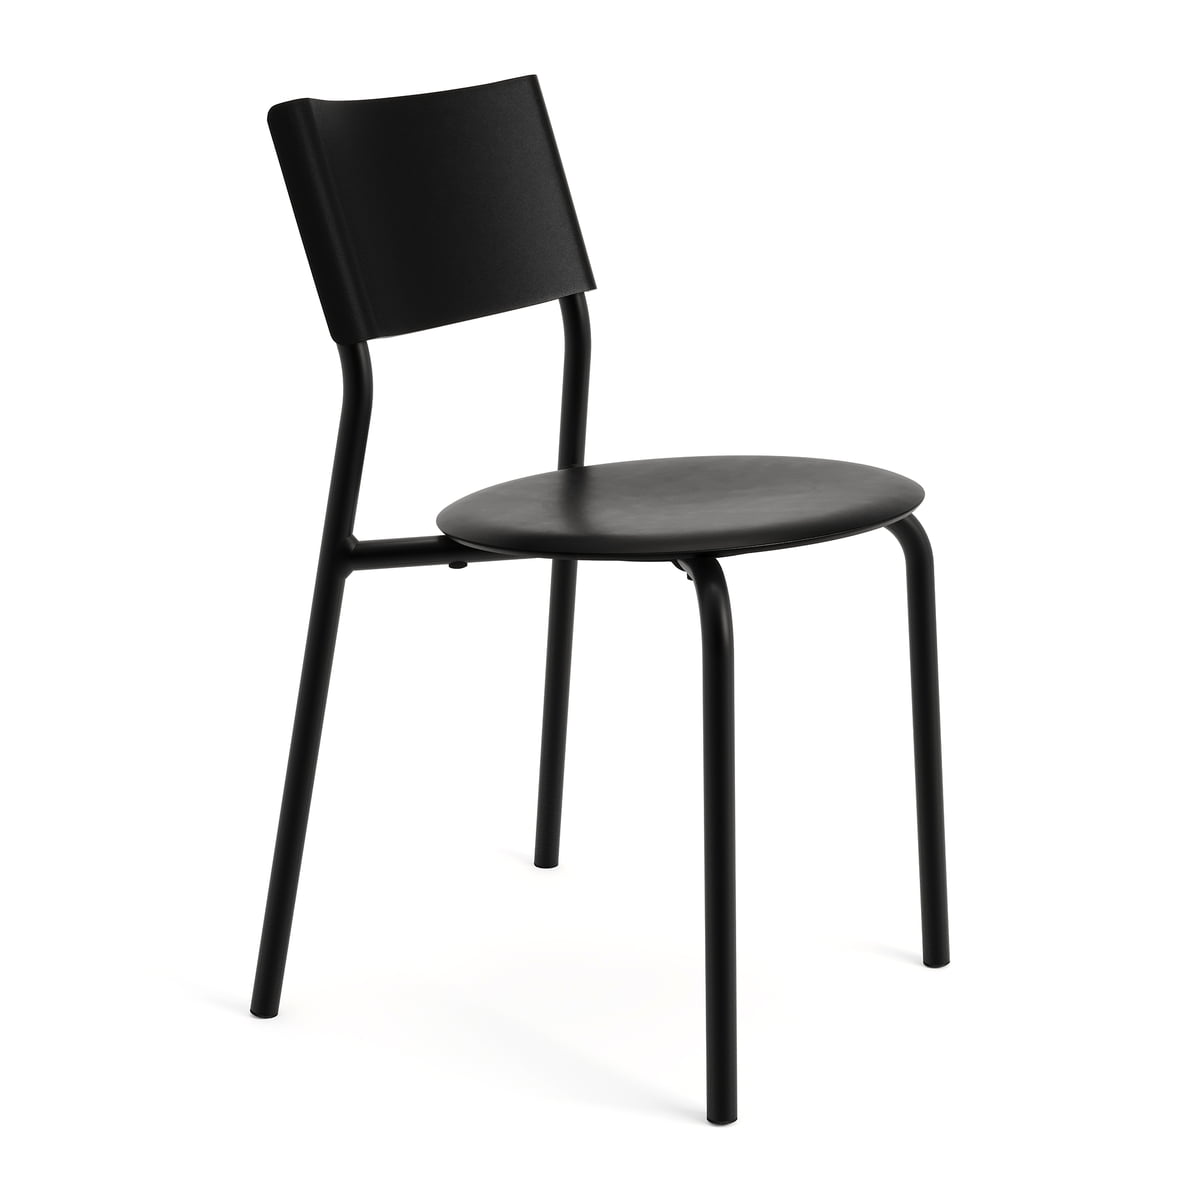 tiptoe - chaise ssdr, plastique recyclé / acier, noir graphite